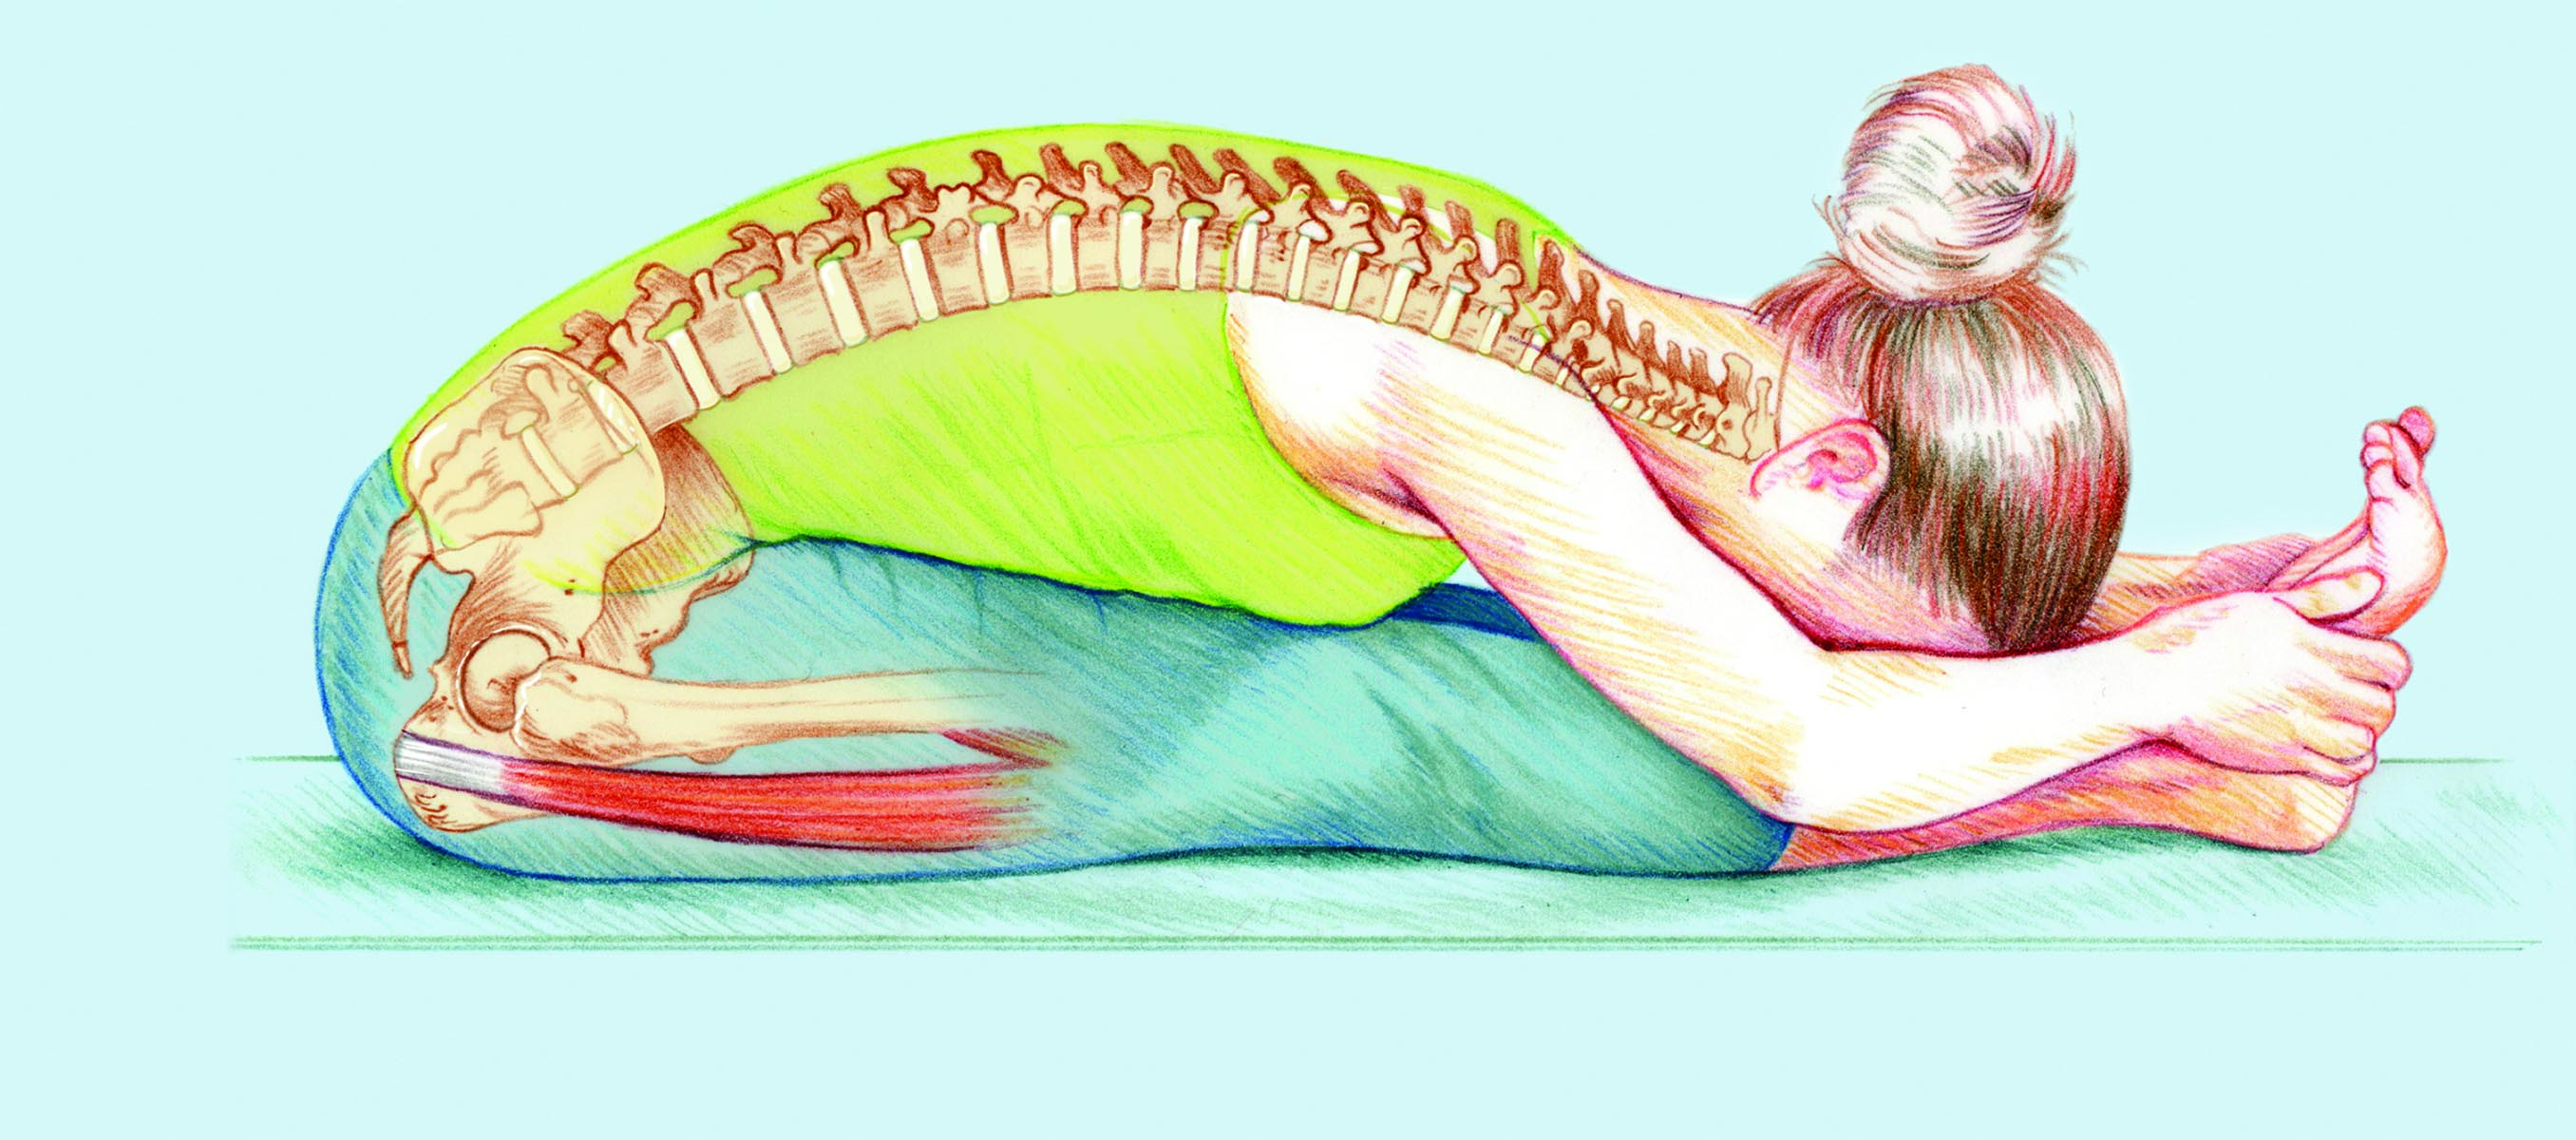 Упражнения для суставов спины